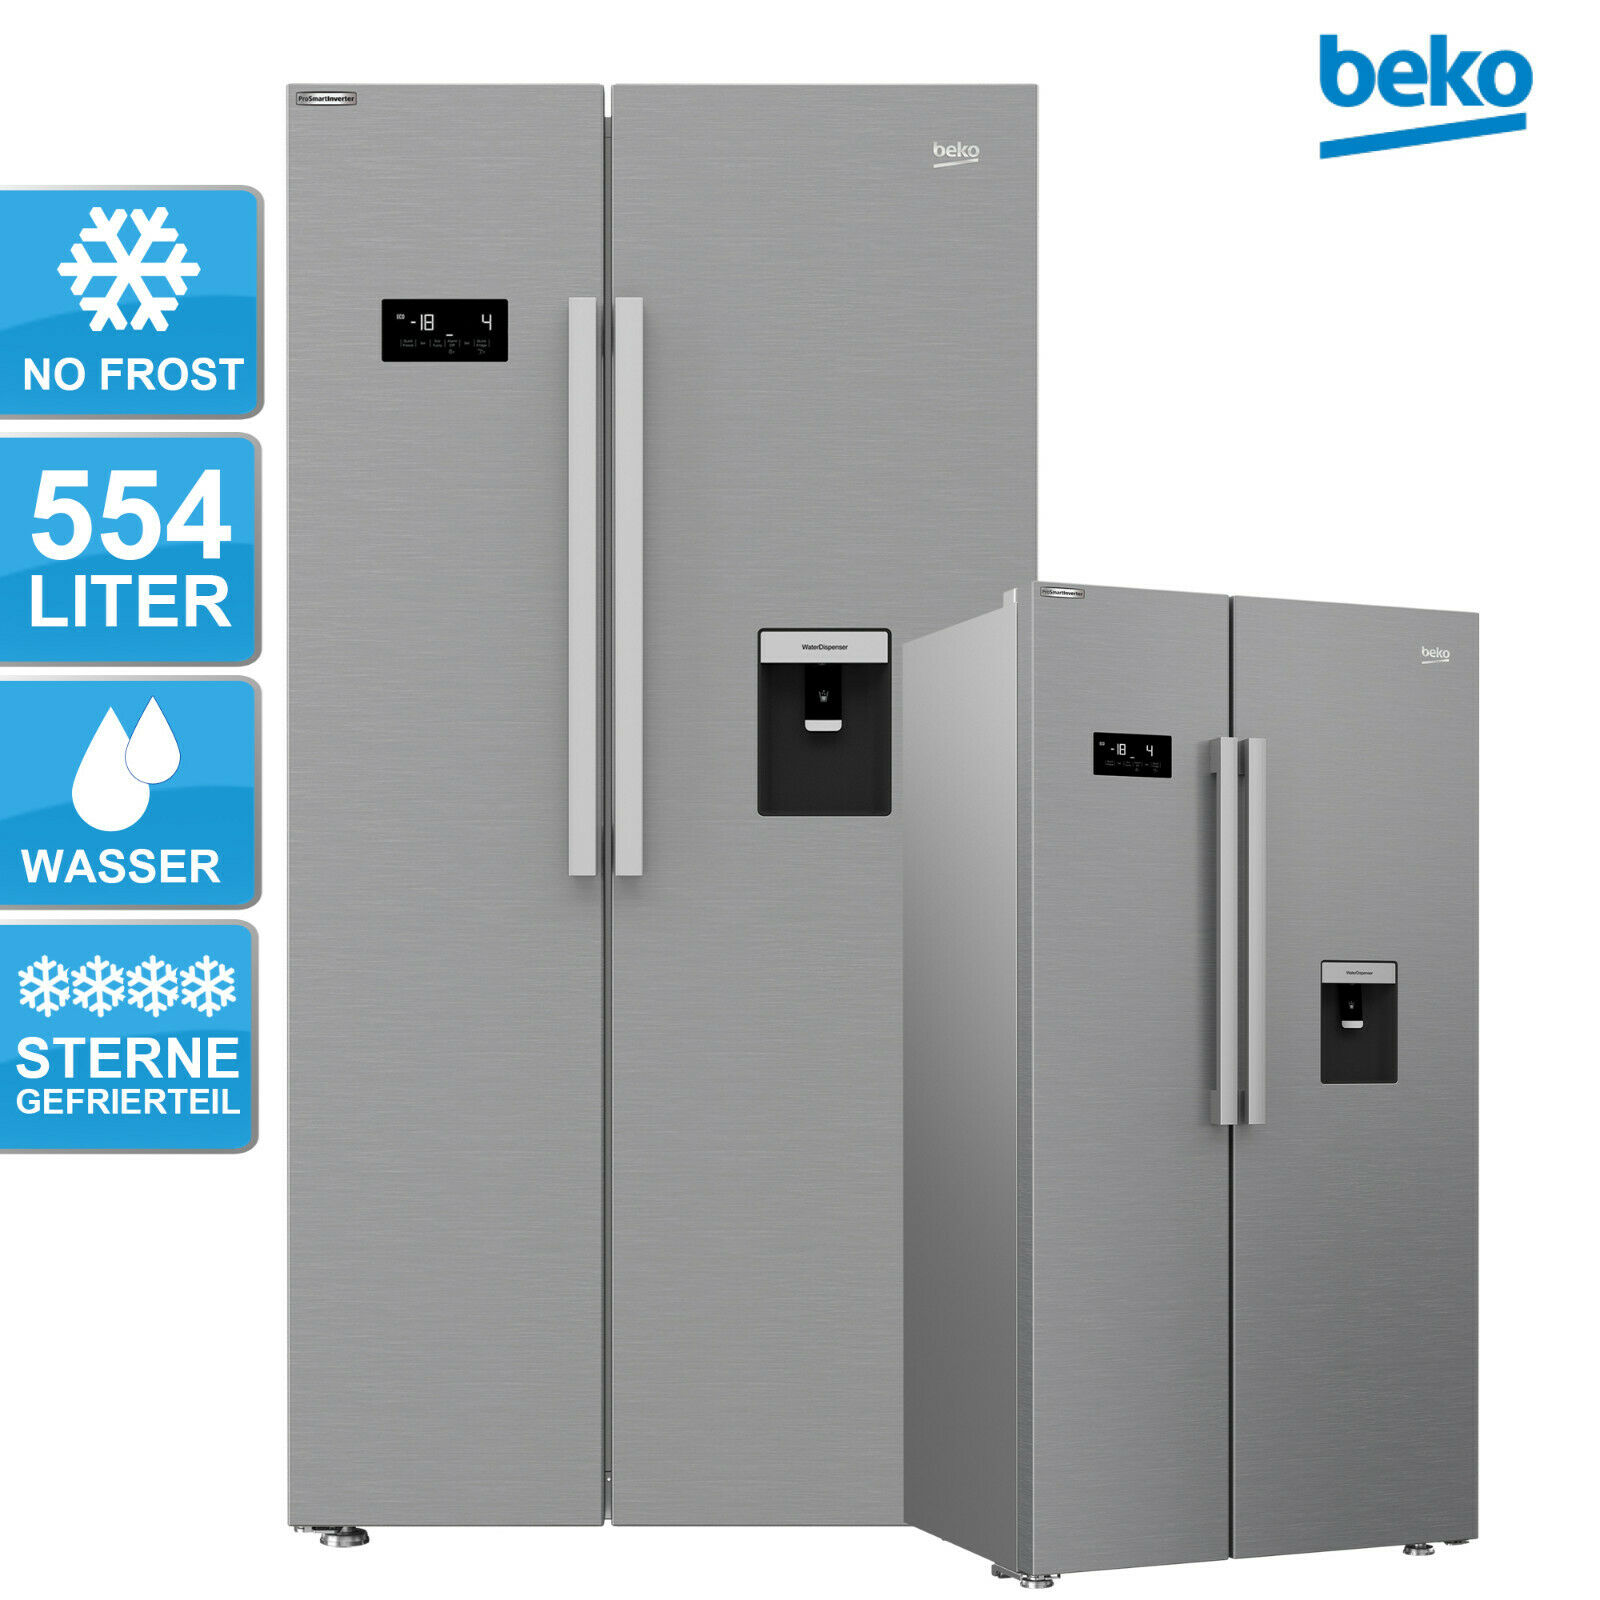 Bild zu Kühl-/Gefrierkombination Beko GNE63521DXB mit No Frost und Wasserspender für 499,90€ (Vergleich: 585,50€)